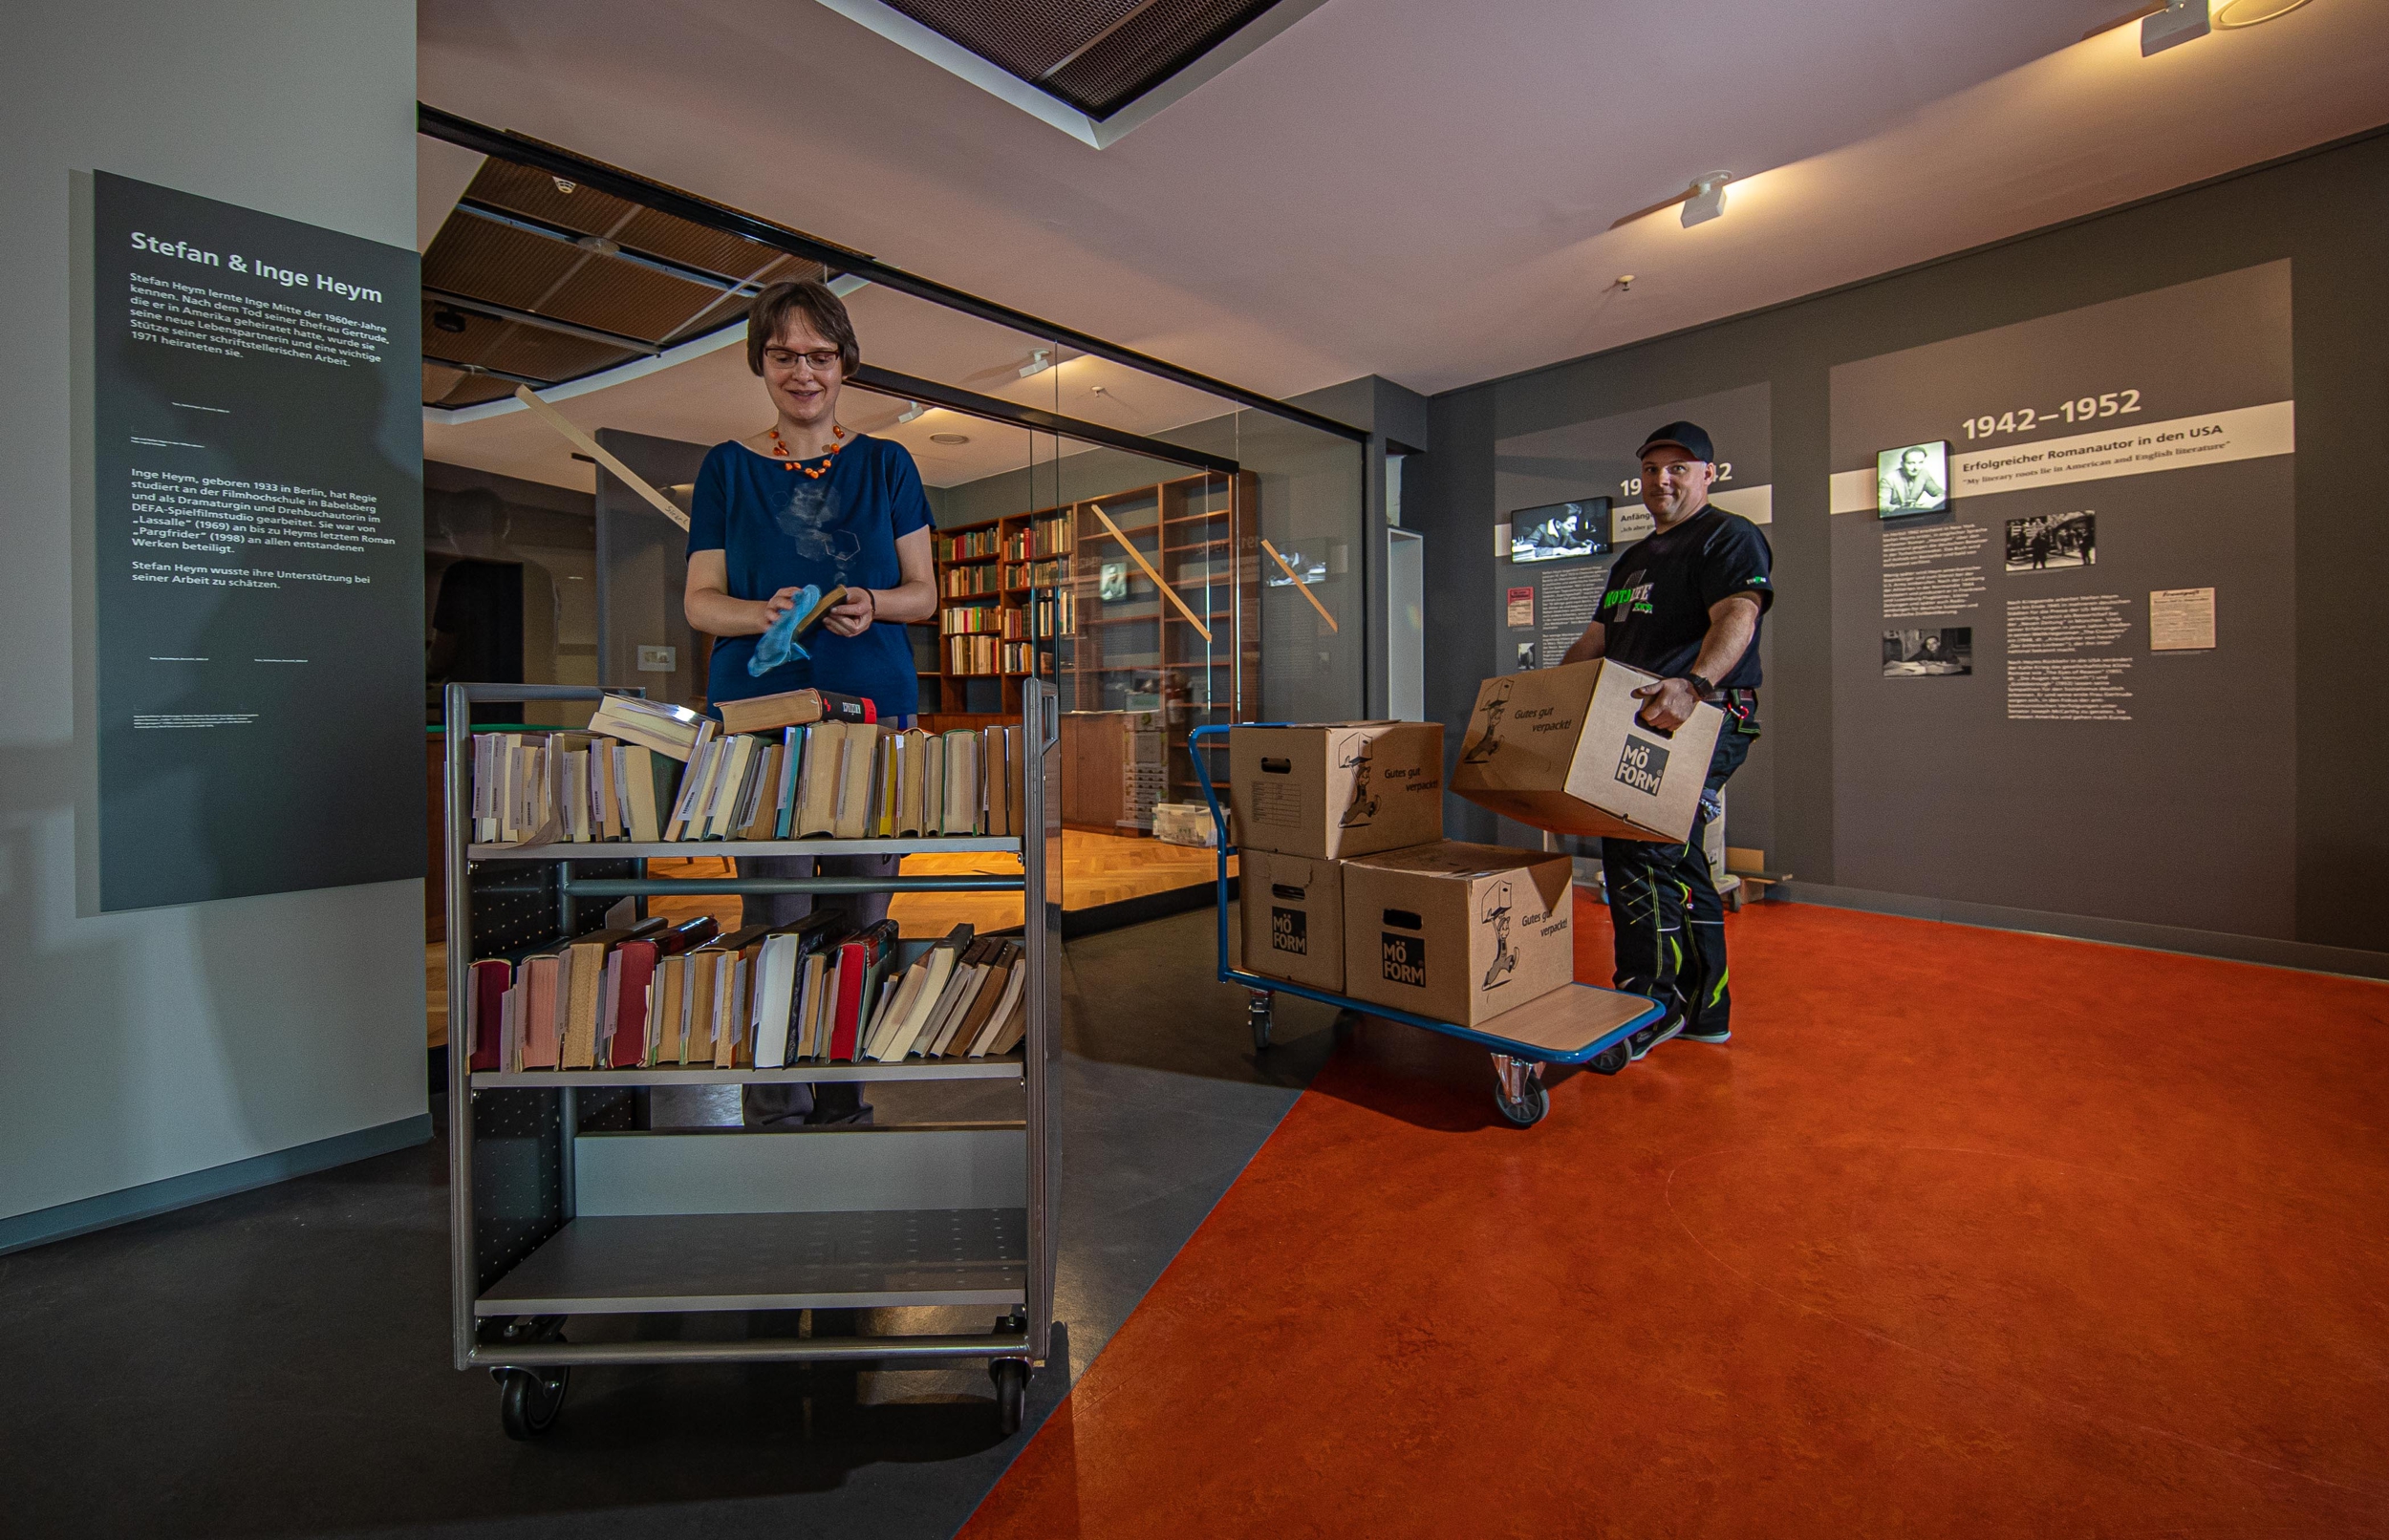 Der Aufbau der Origingal-Arbeitsbibliothek von Stefan und Inge Heym im TIETZ